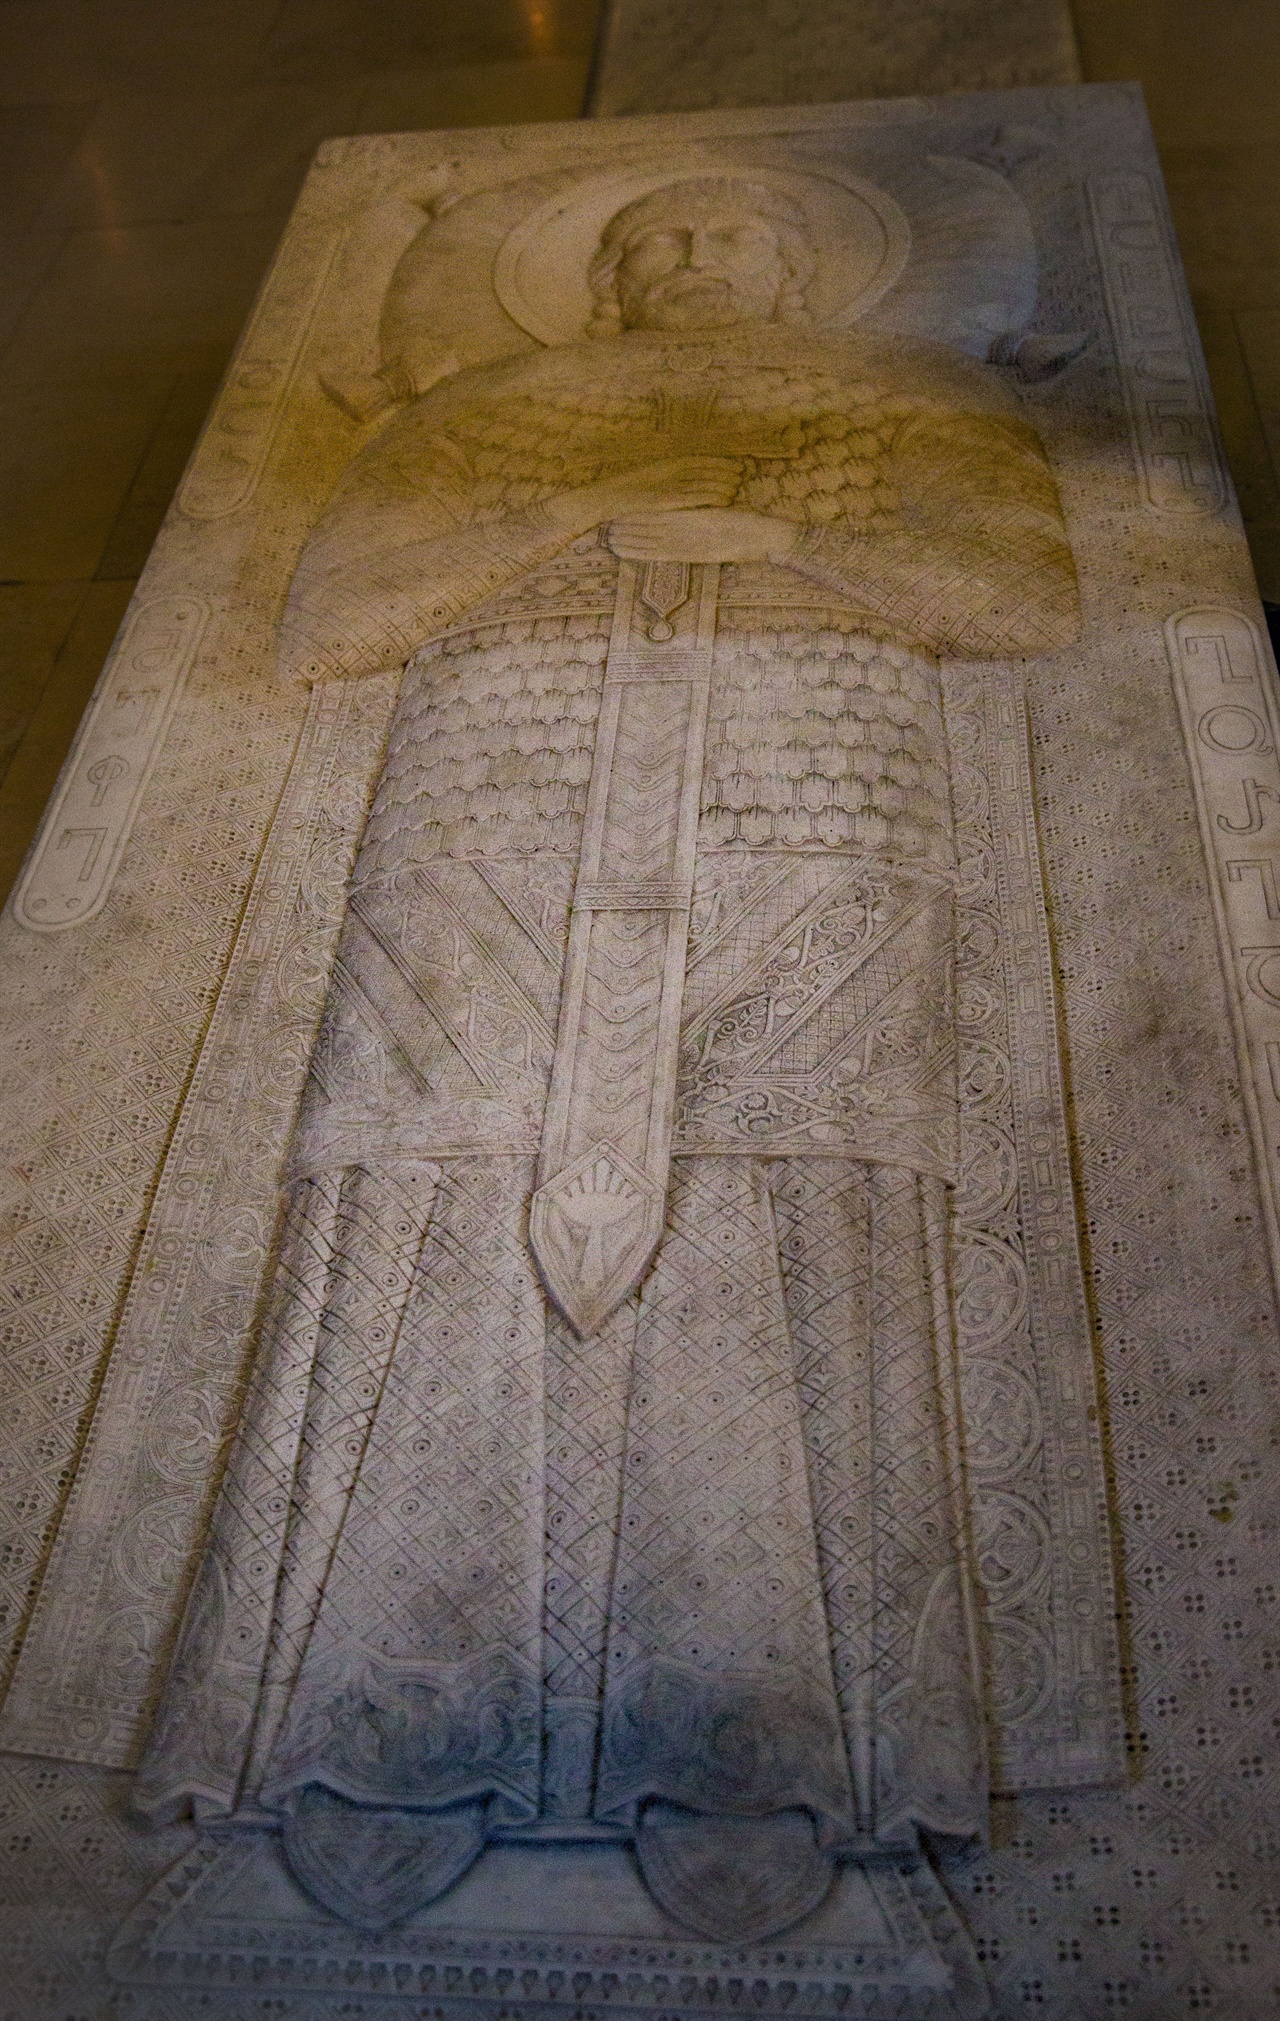 석관 상판에 칼을 들고 있는 바흐탕 고르가살리의 모습이 새겨져 있다.